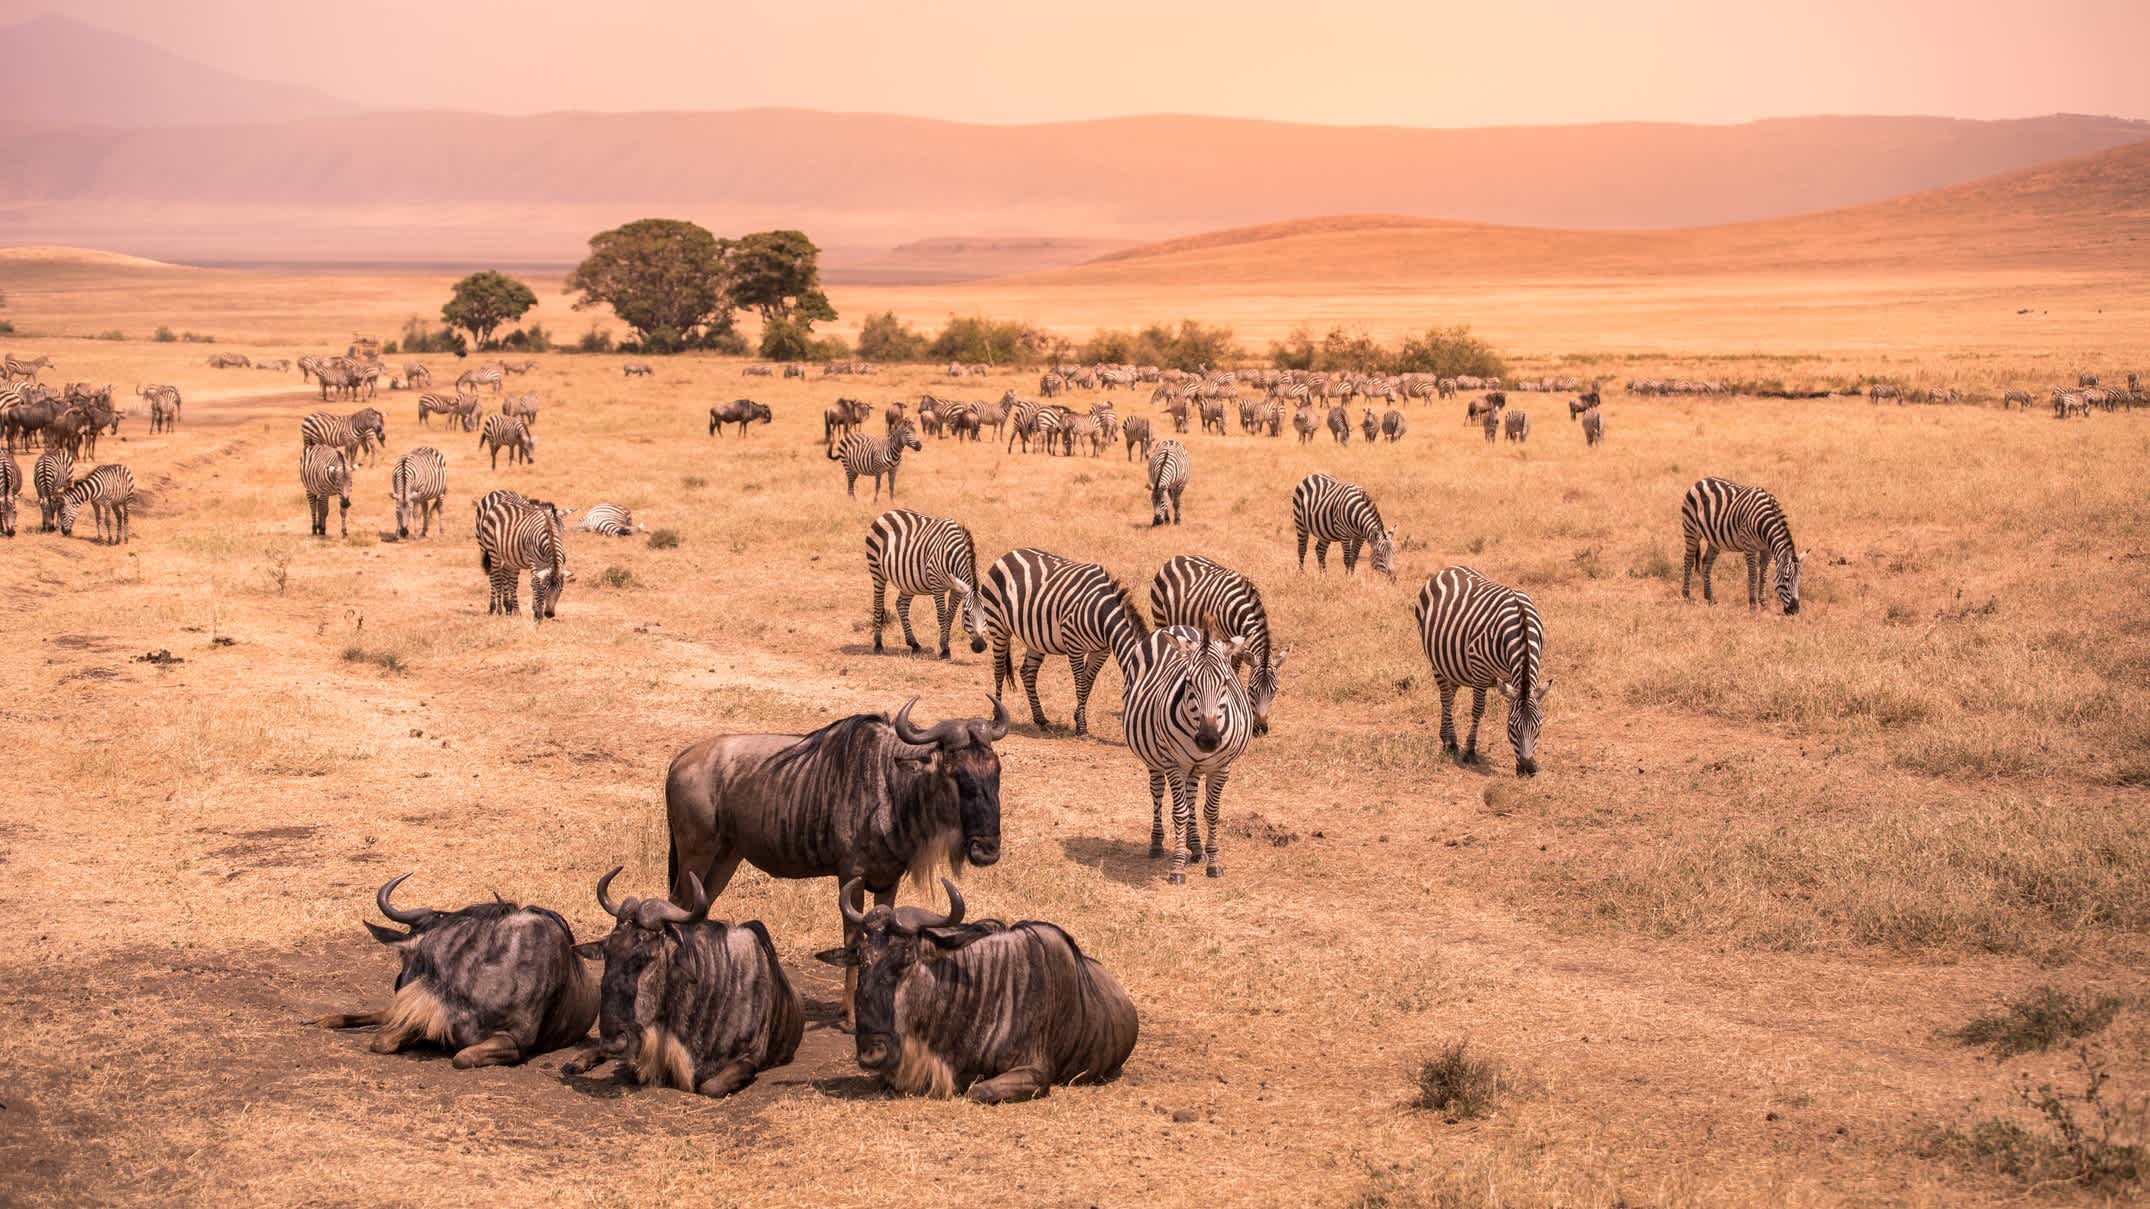 Landschaft der Ngorongoro Krater - Herde Zebras und gnus (auch bekannt als Gnus) auf der Weide grasen - wilde Tiere bei Sonnenuntergang - Ngorongoro Conservation Area, Tansania, Afrika